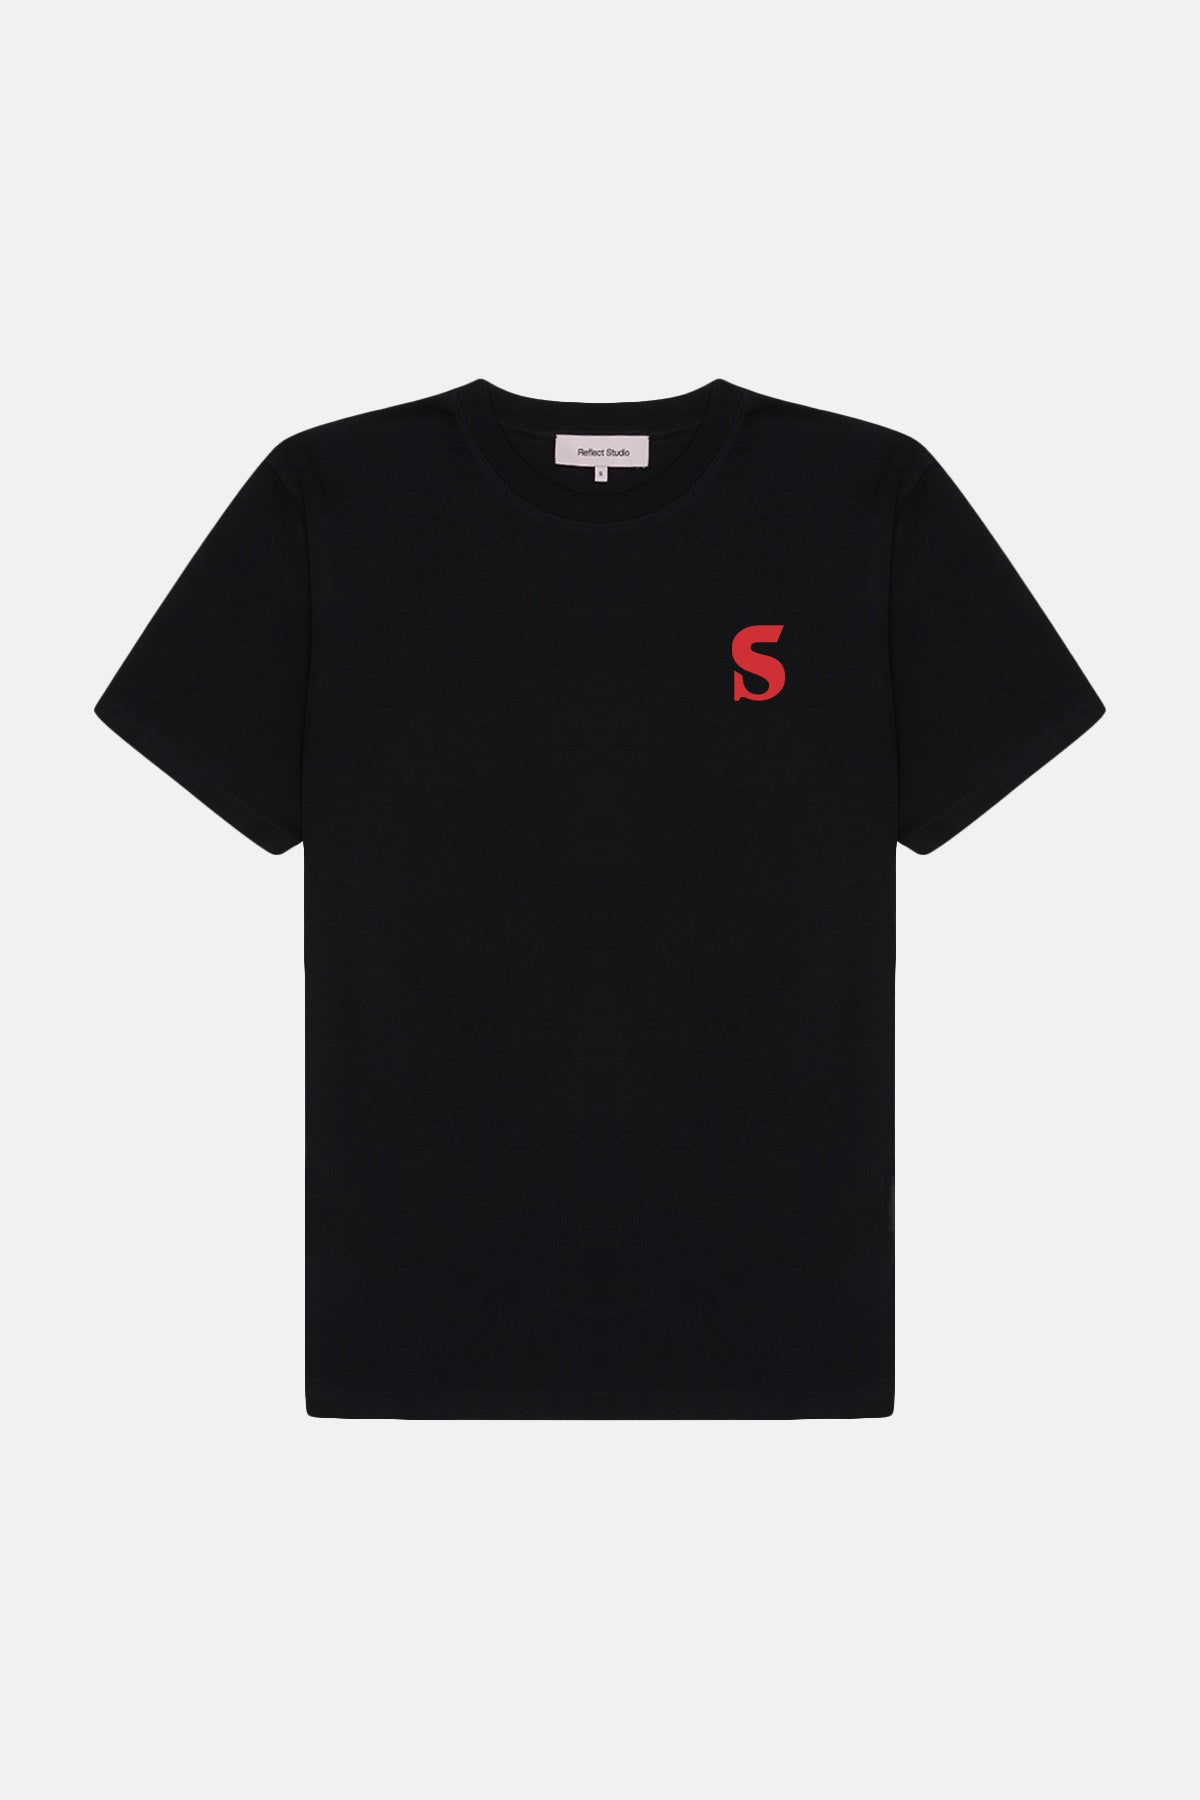 Issue #20 Premium T-Shirt - Siyah